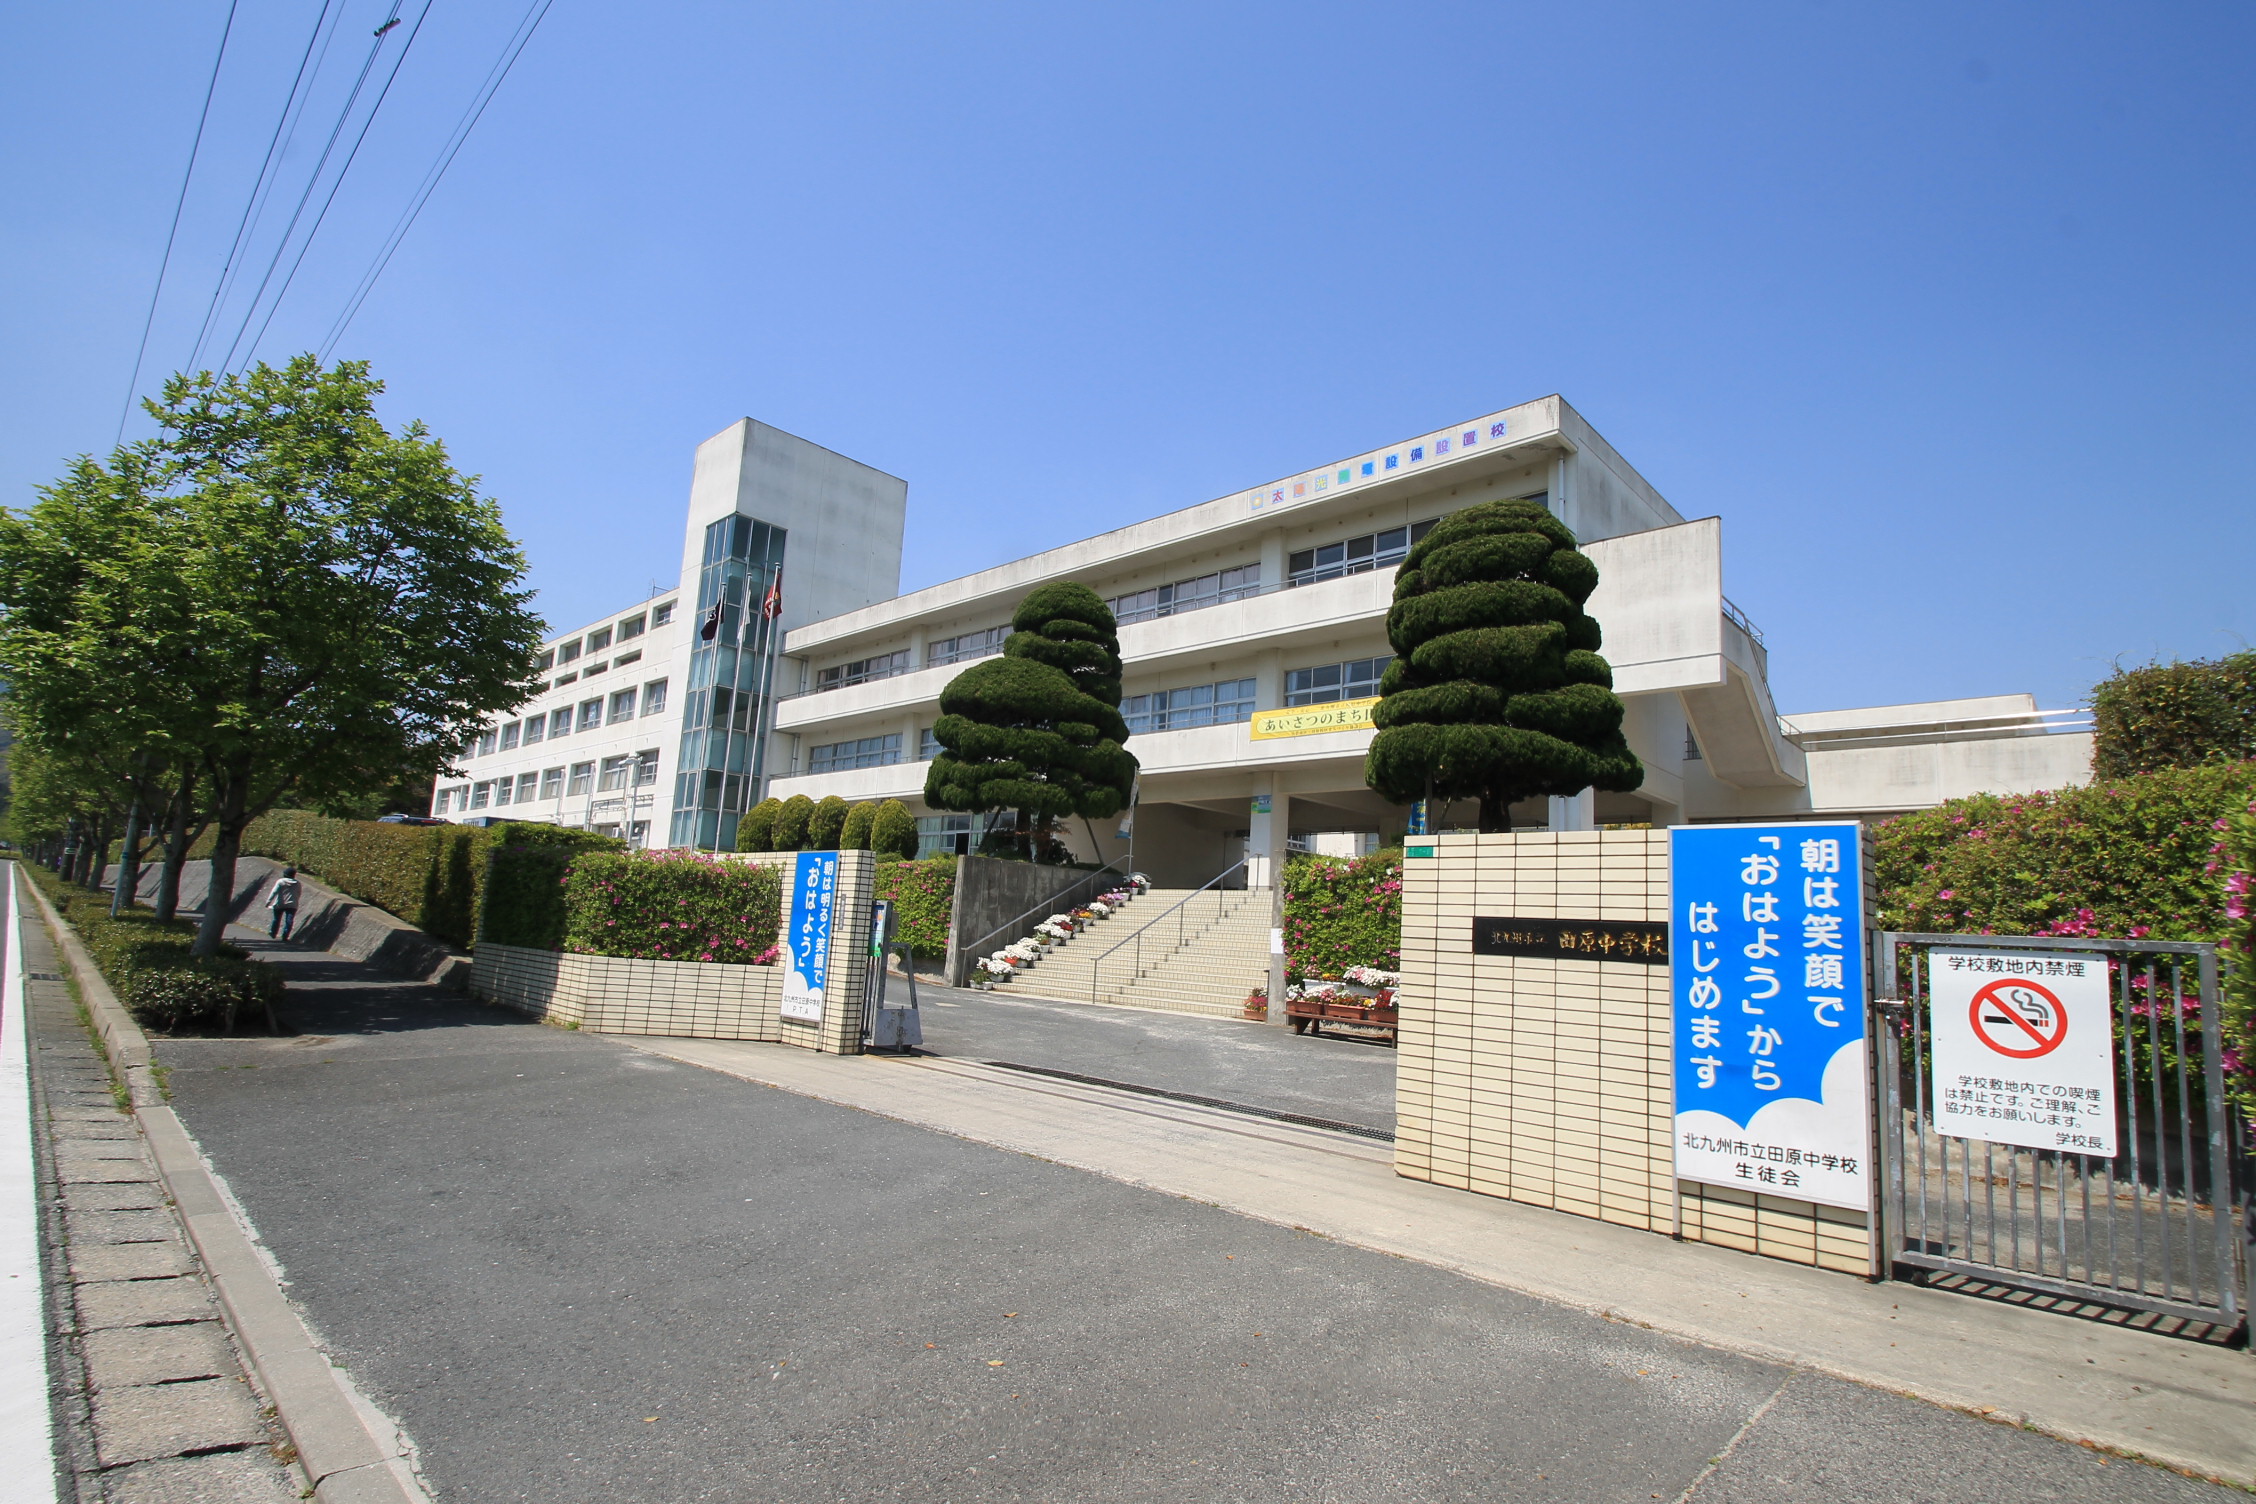 Junior high school. 977m to Kitakyushu Tahara junior high school (junior high school)